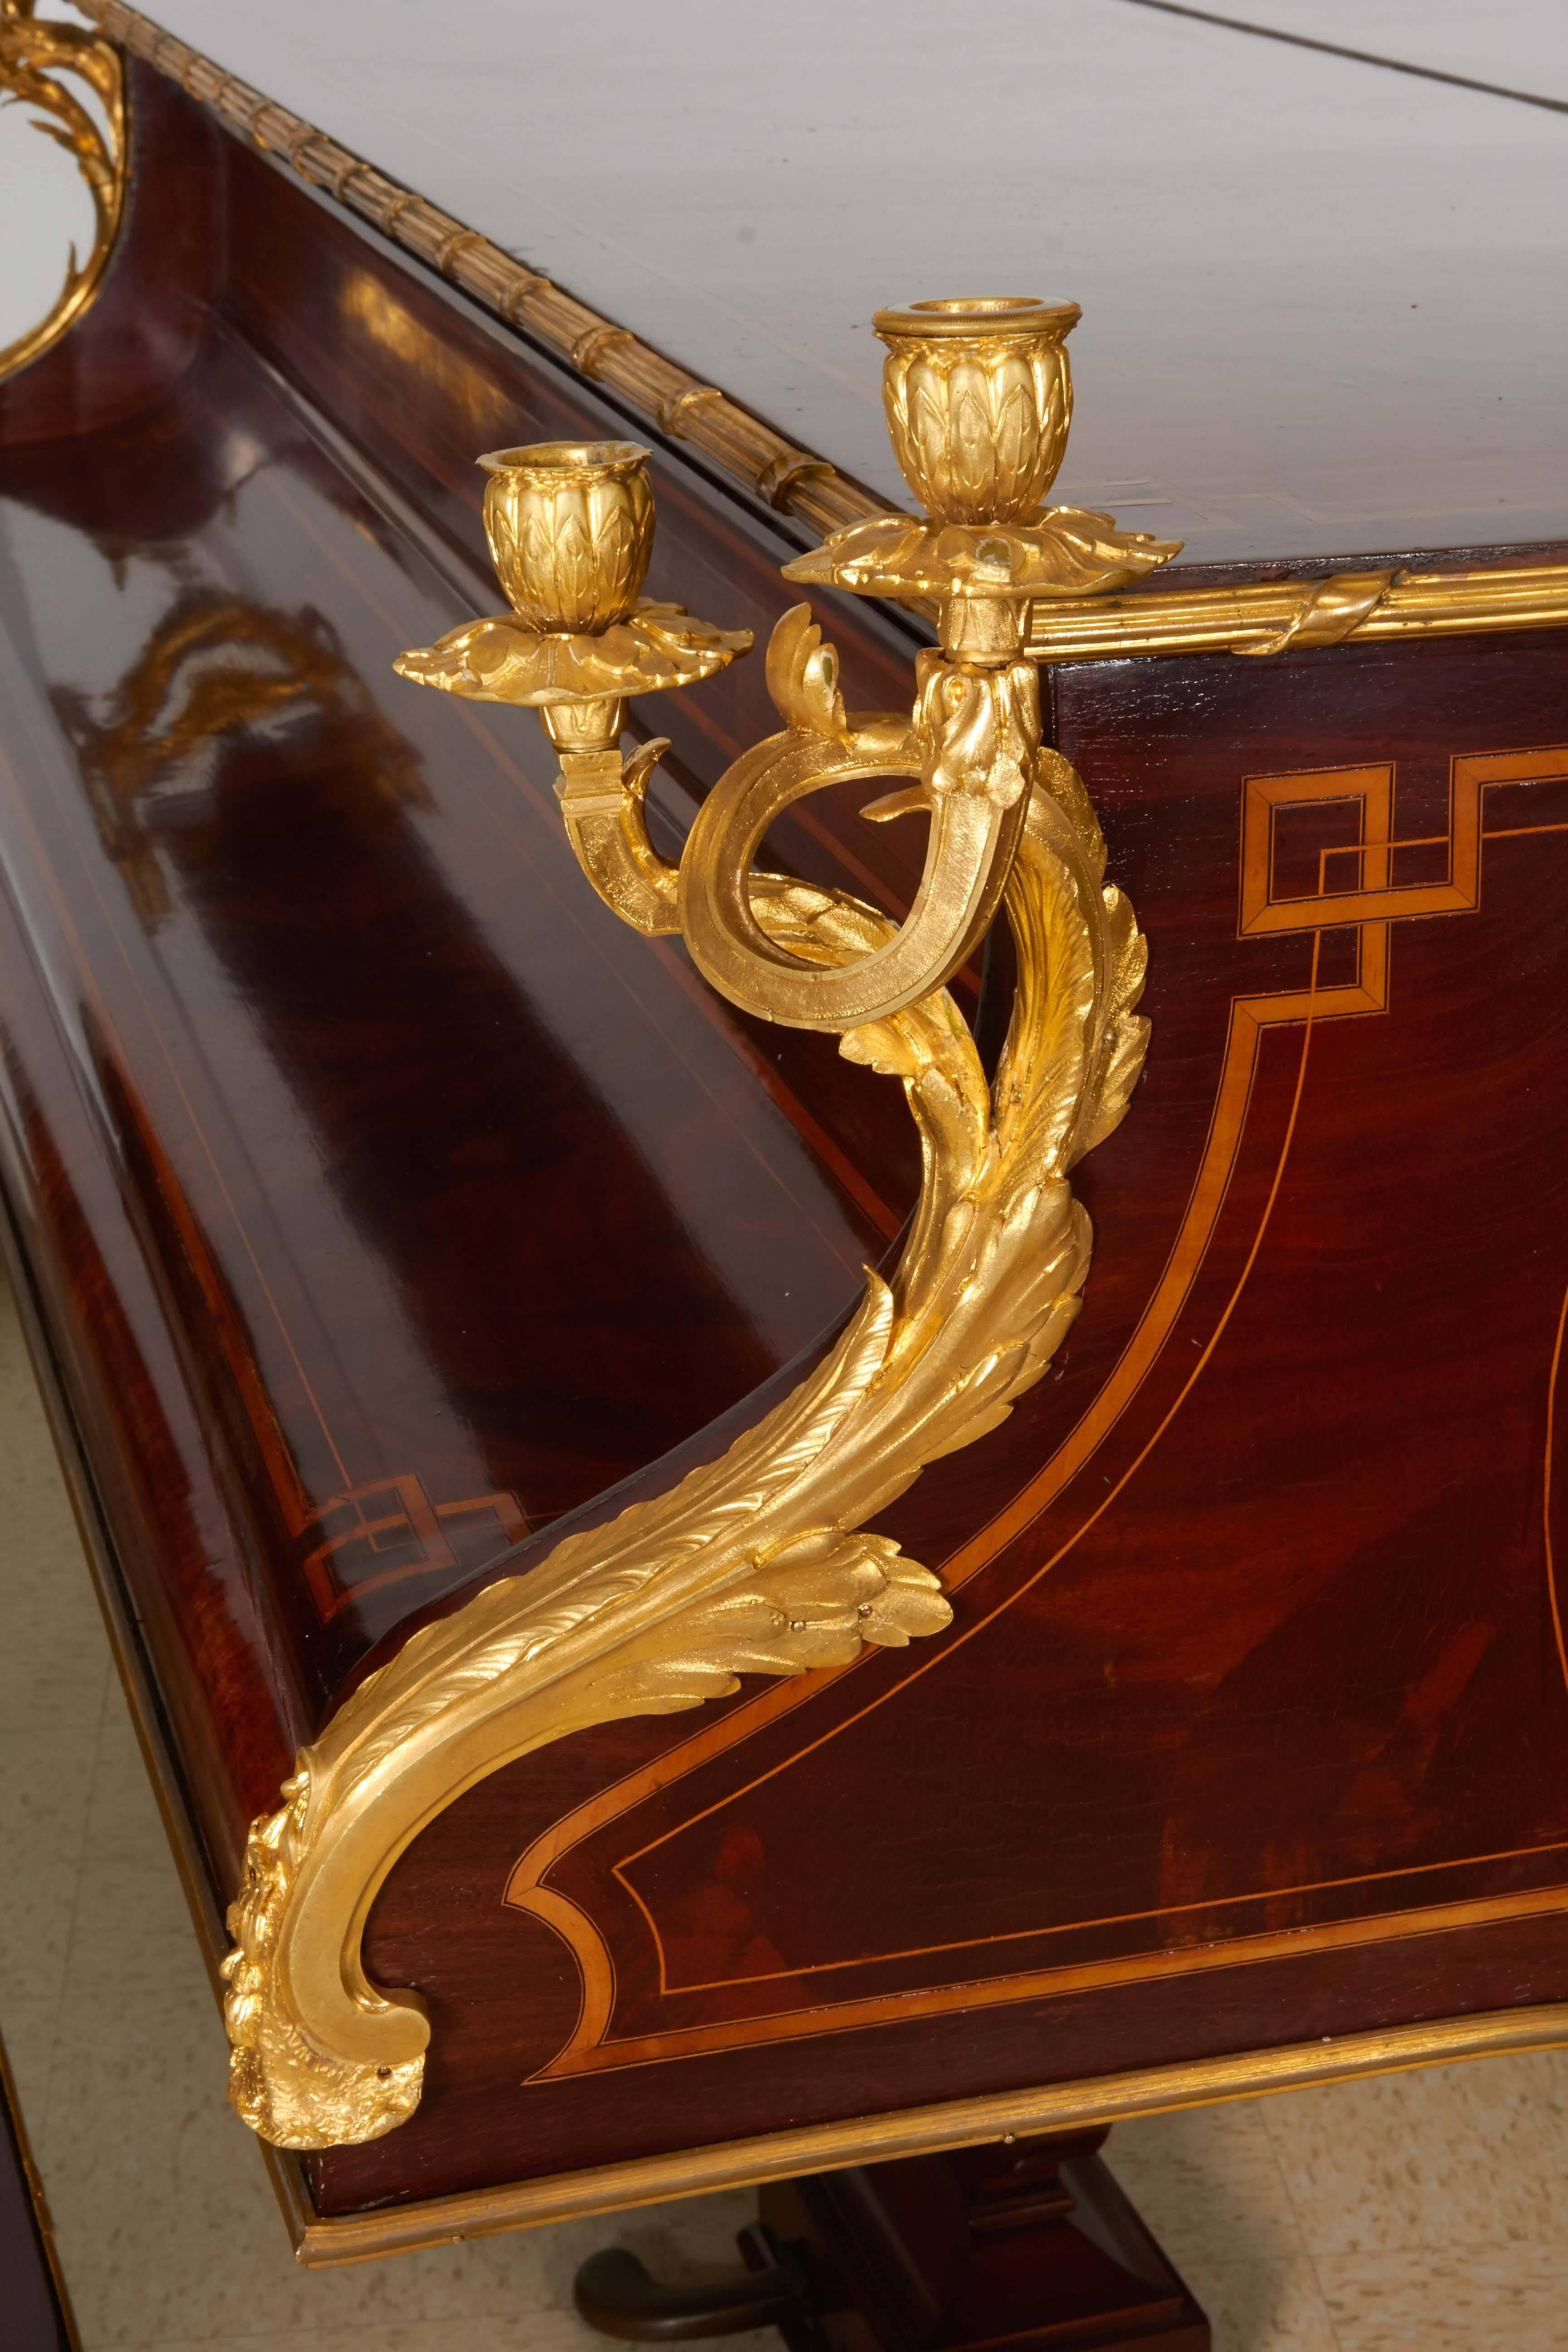 Magnifique piano français de Pleyel:: monté en bronze doré:: en marqueterie et en vernis martin. Les montures en bronze sont de Ferdinand Barbedienne (le dos de certaines montures est estampillé FB) dans le goût de Léon Message / François Linke.